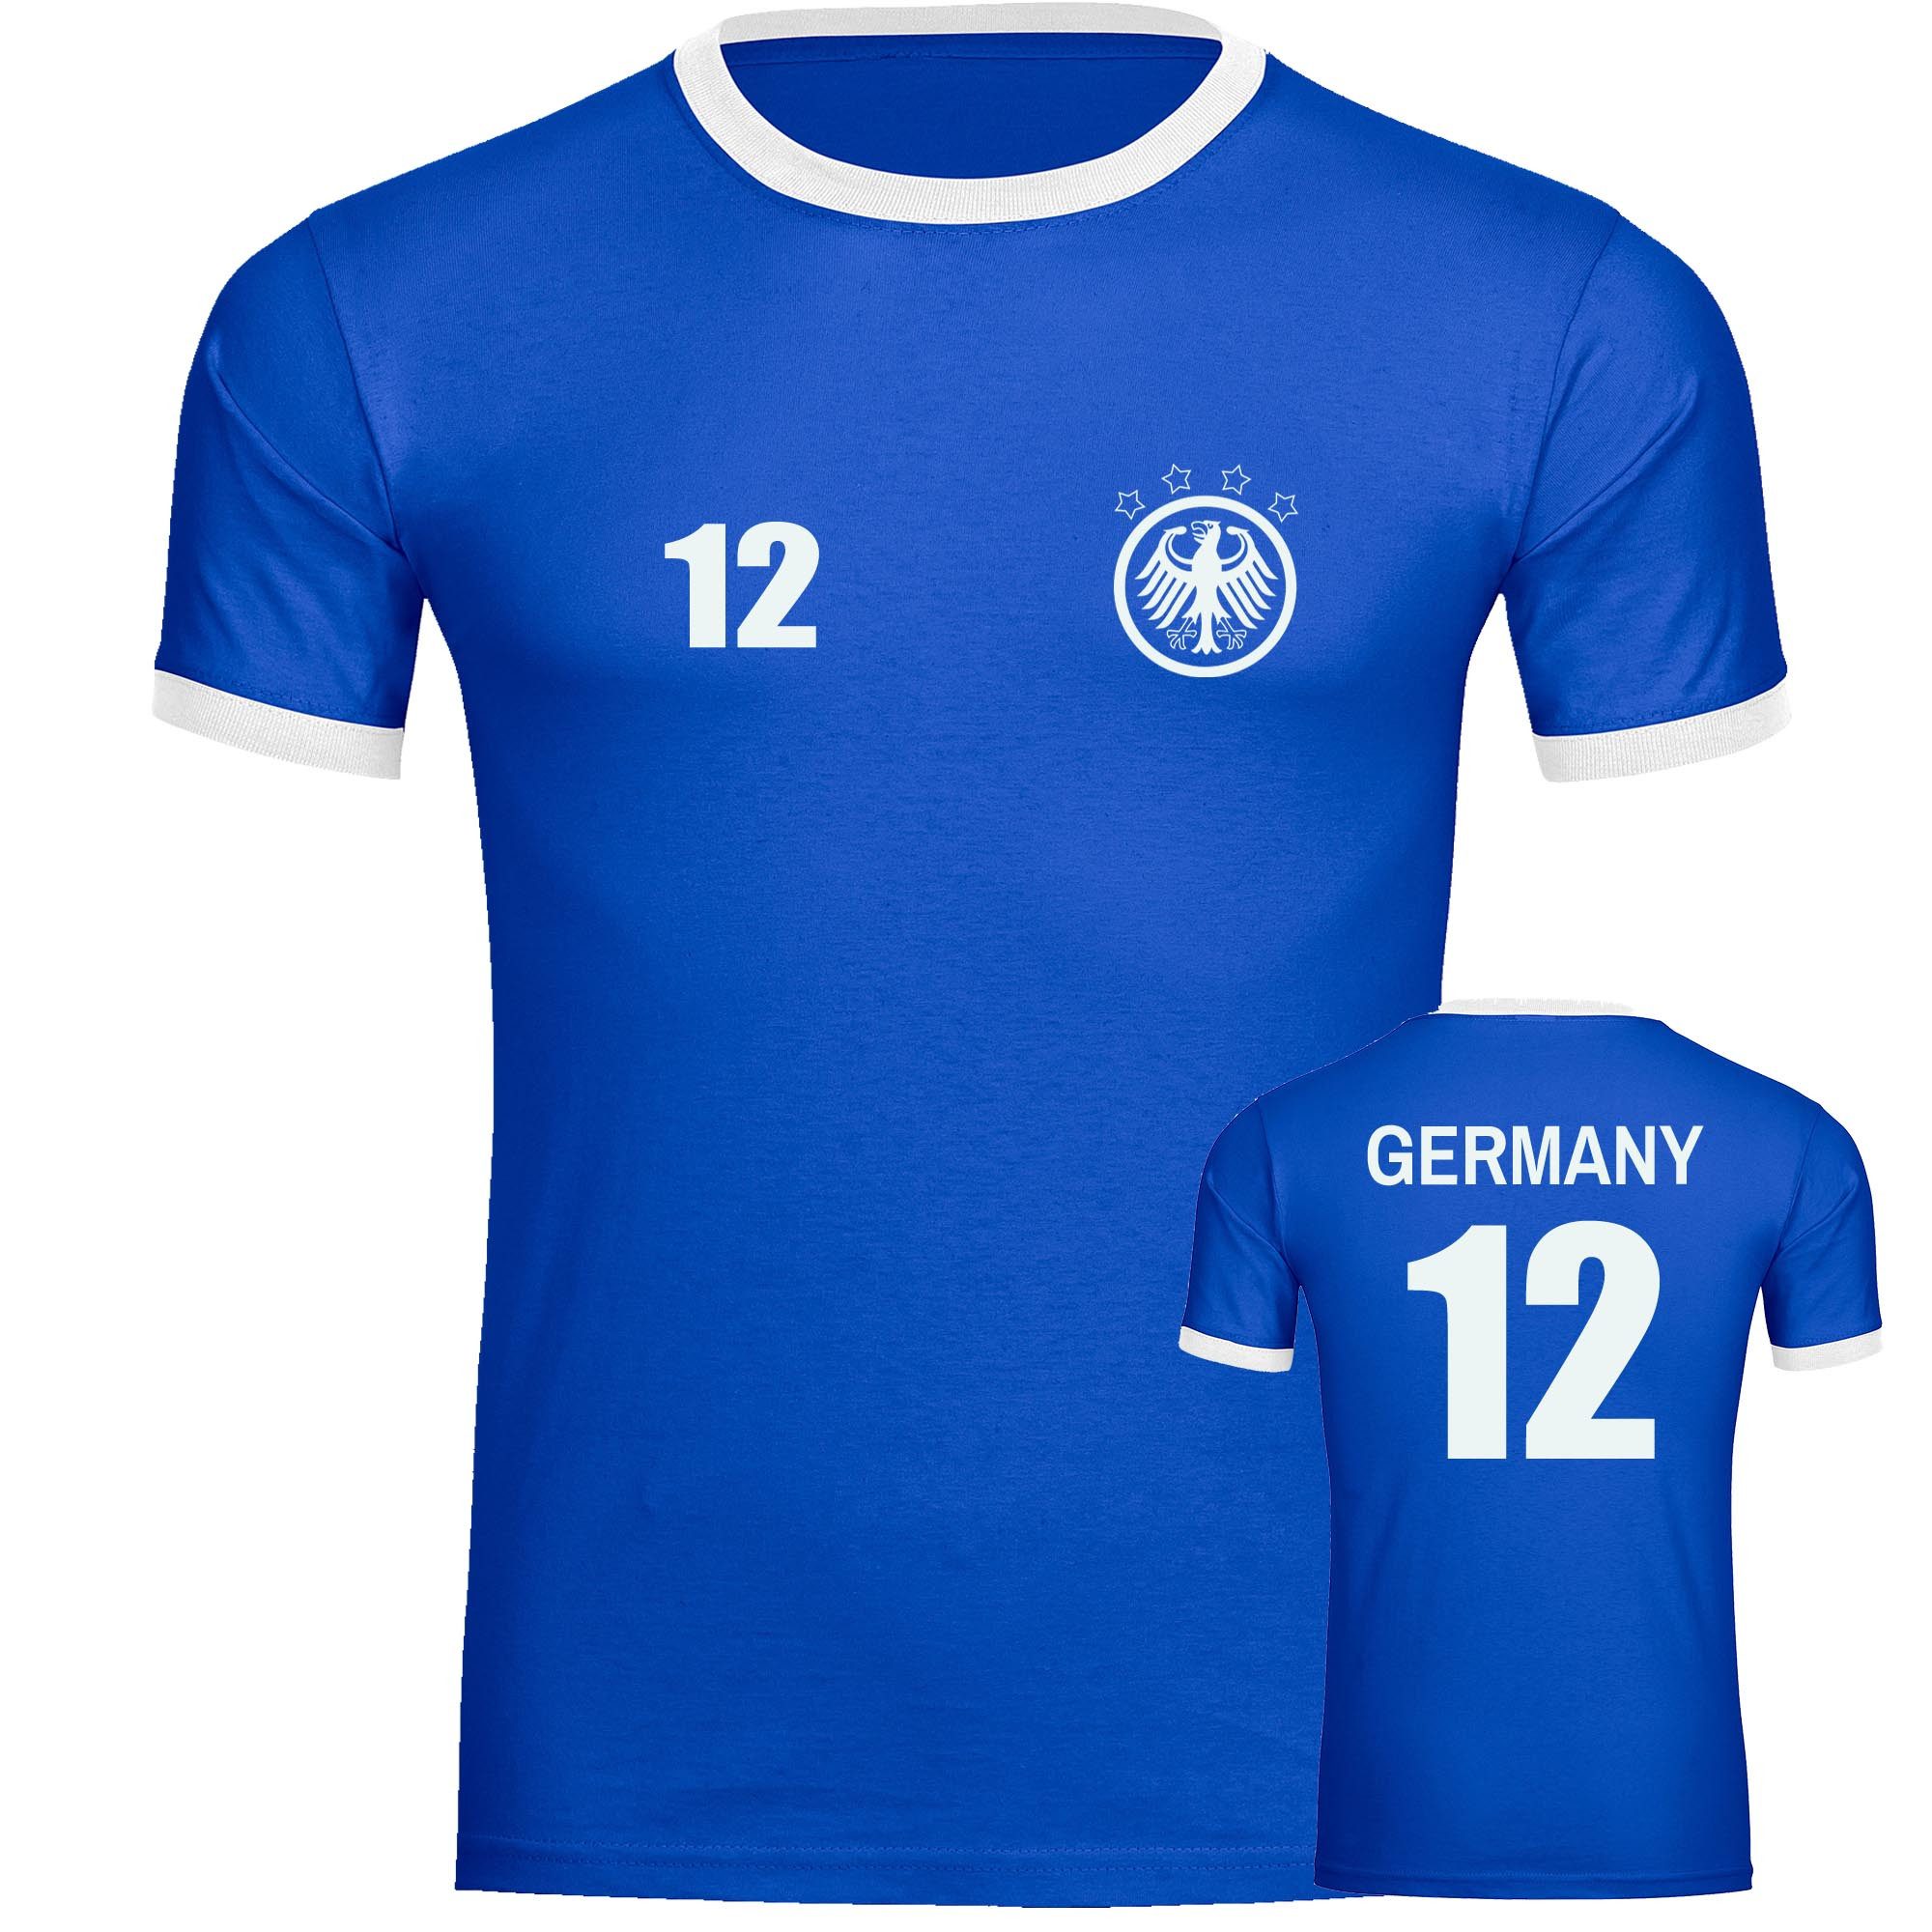 multifanshop T-Shirt Kontrast Germany - Adler Retro Trikot 12 - Männer